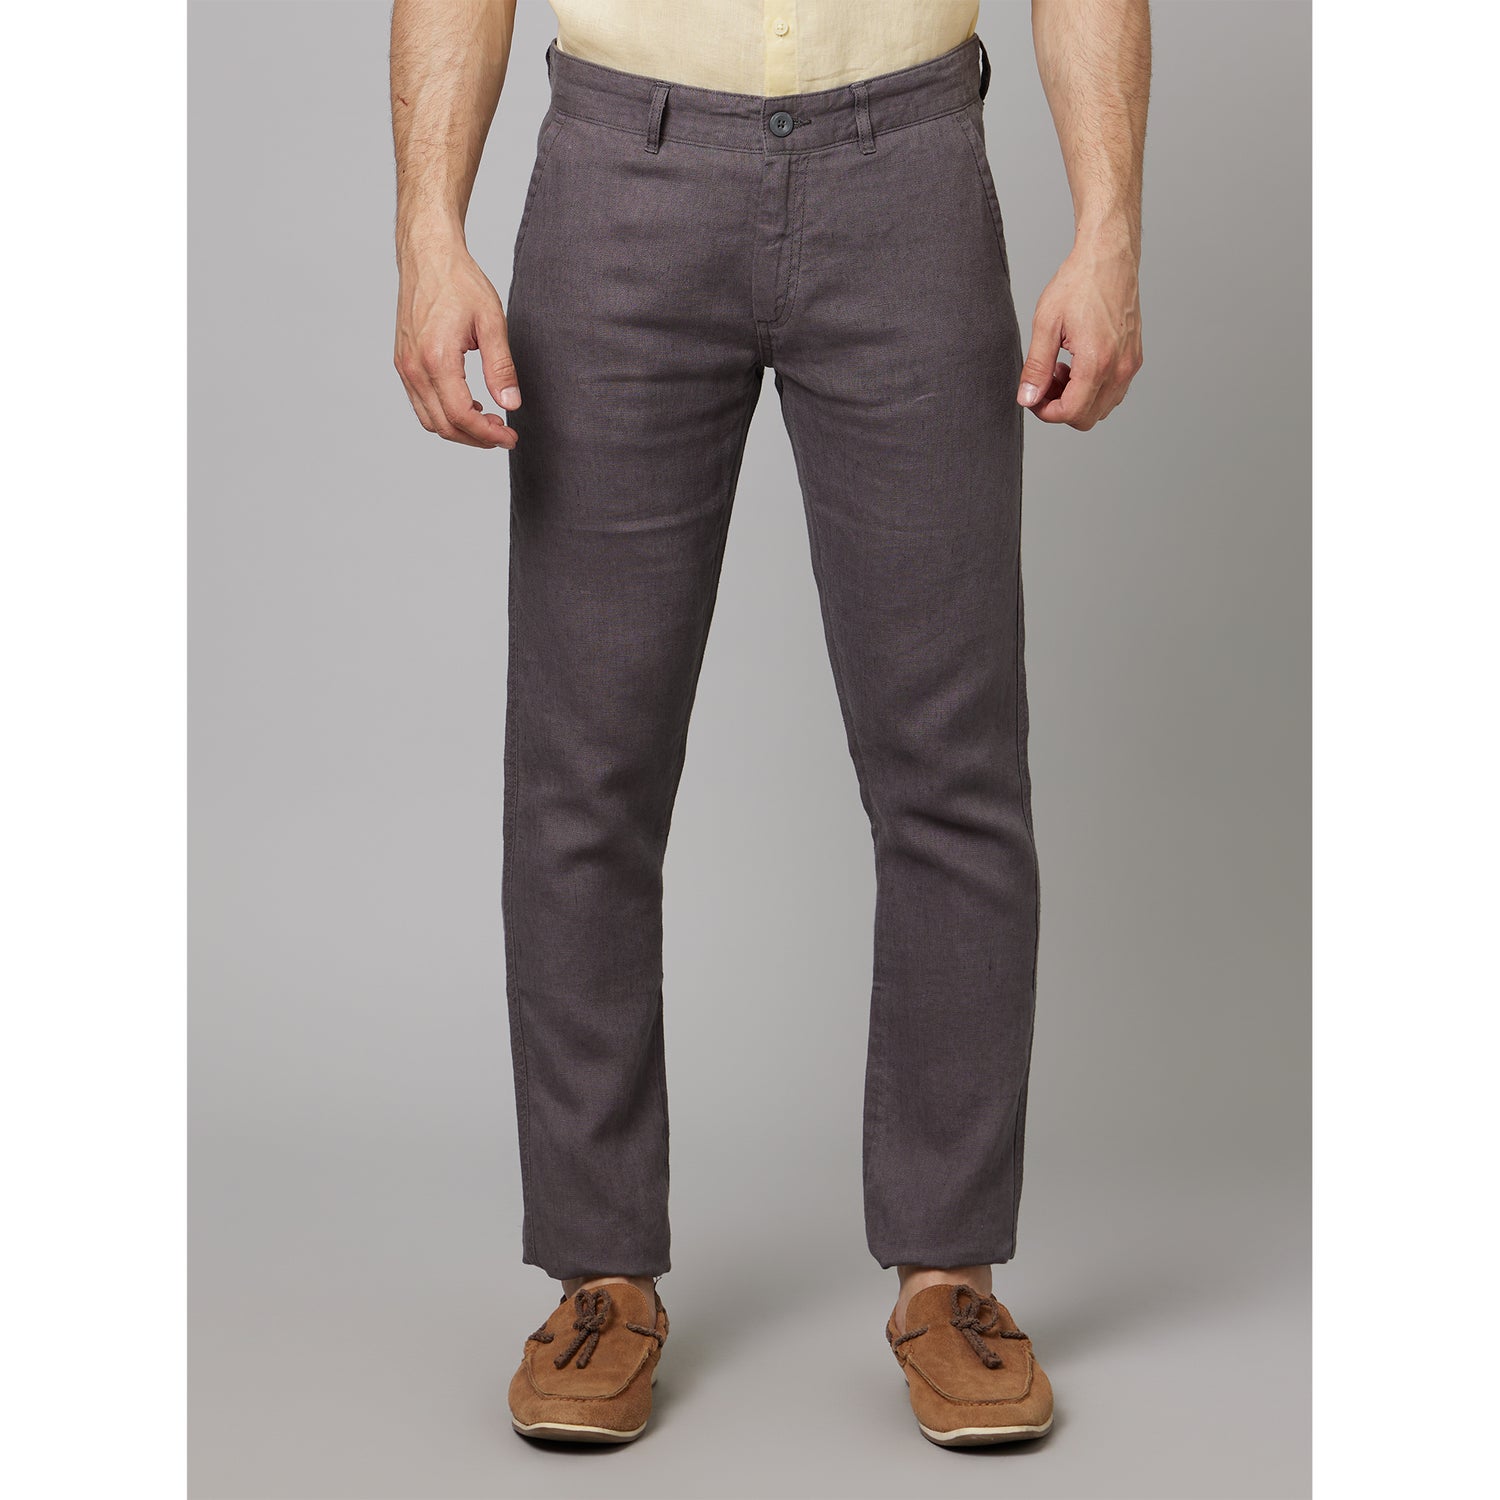 Grey Mid Rise Plain Linen Slim Fit Trousers (DOLINENIN)